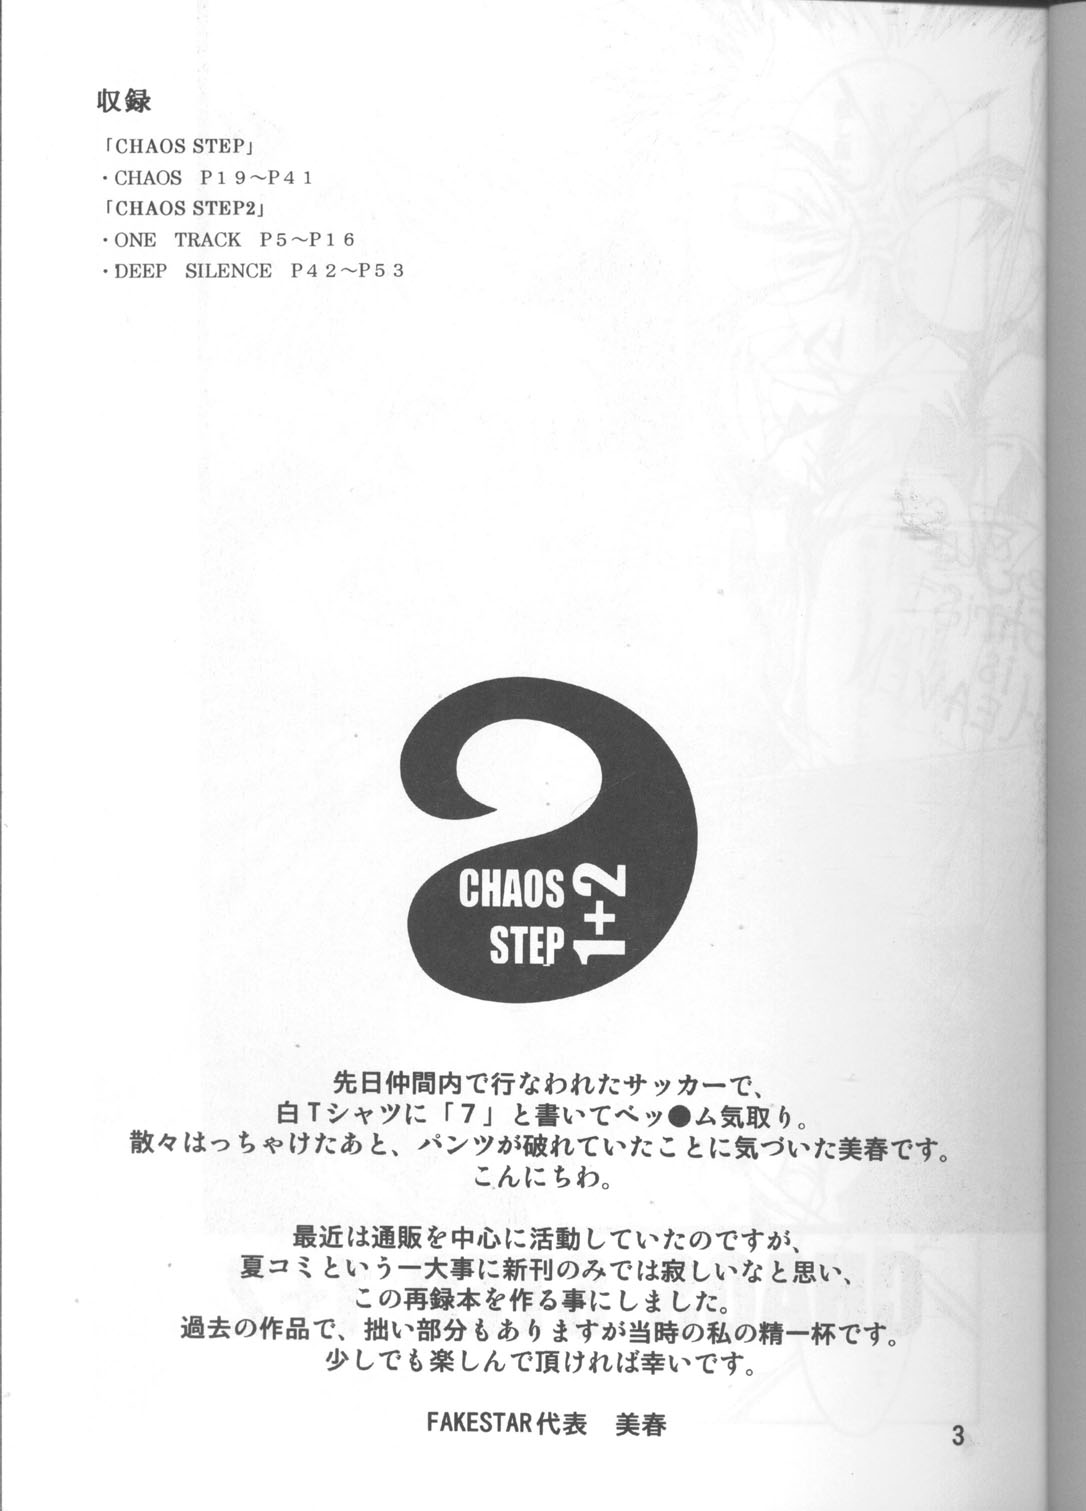 [FAKESTAR (Miharu)] CHAOS STEP 1+2 (Hellsing) page 2 full